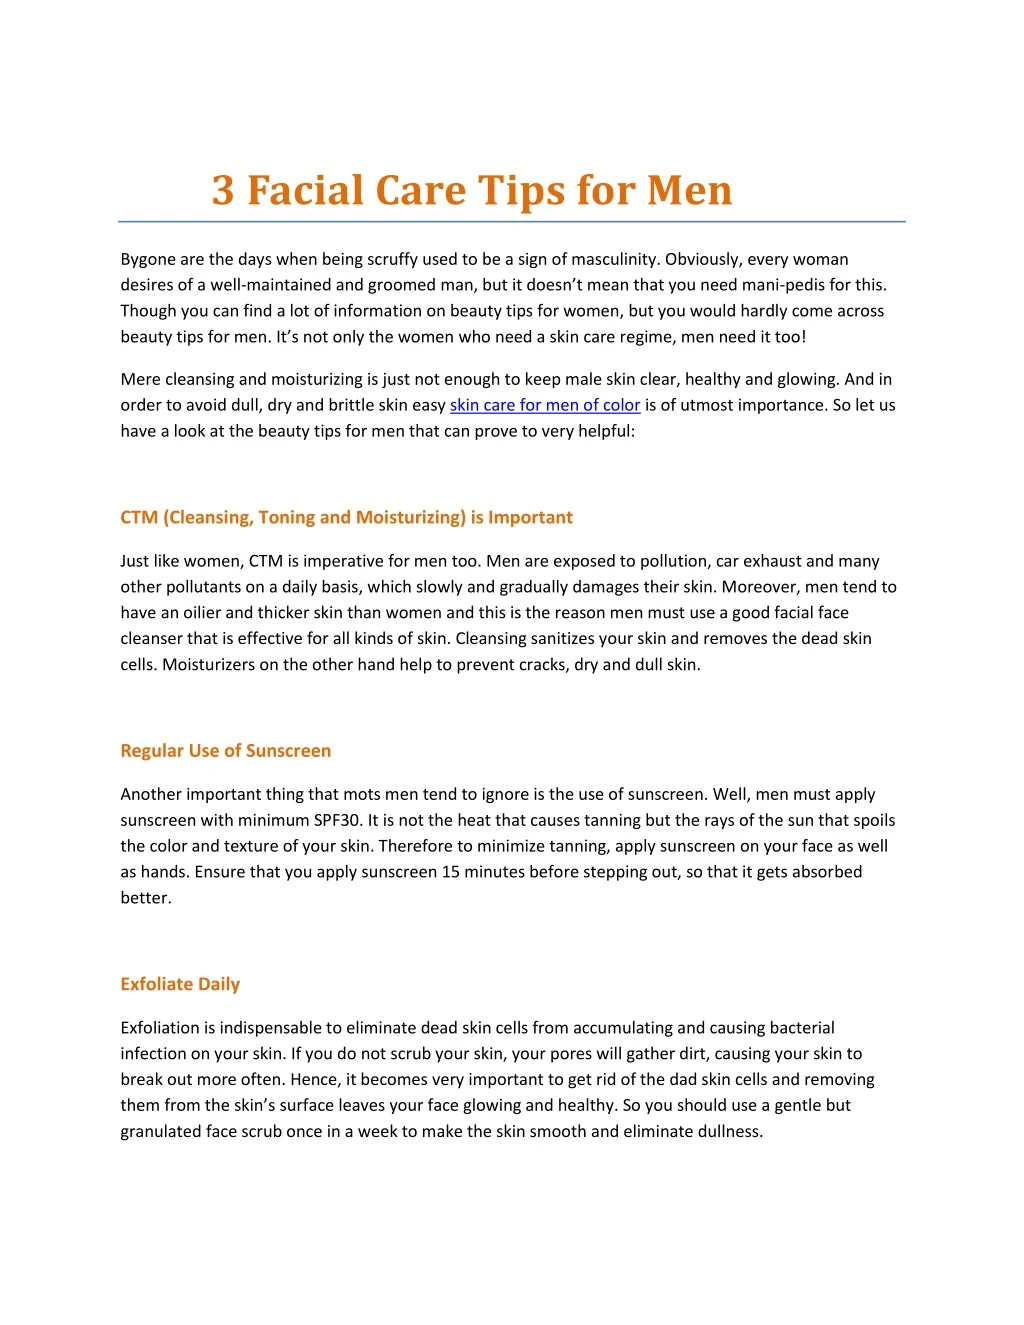 3 facial care tips for men